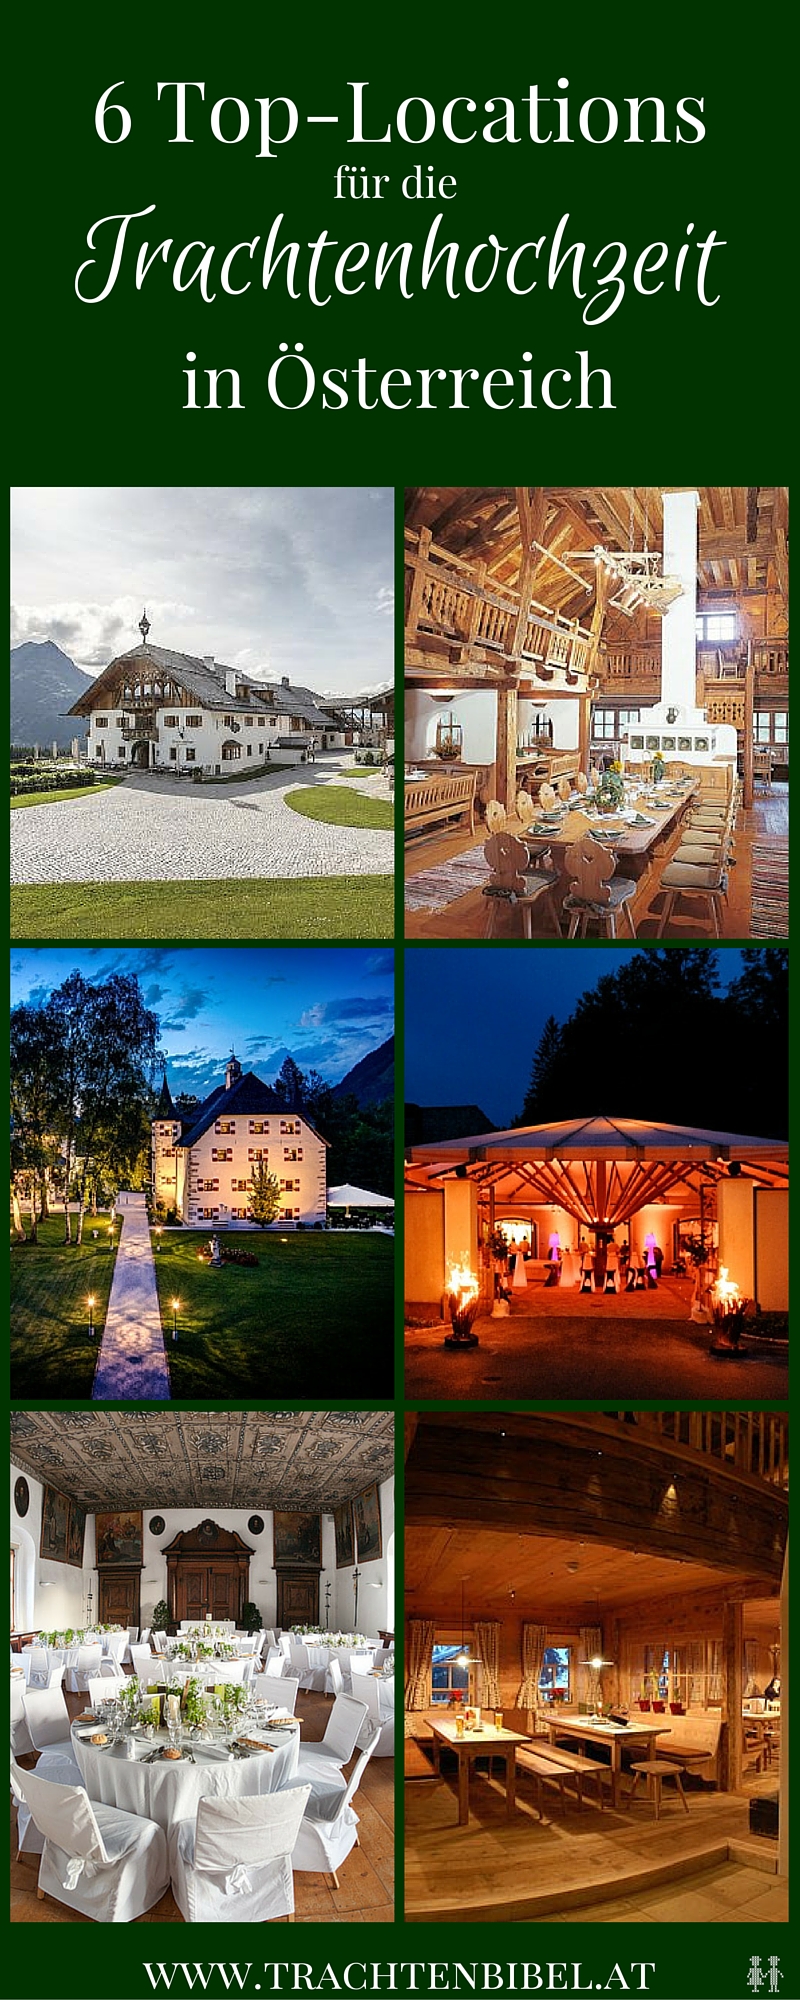 Hochzeitsplanerin Daniela Kainz verrät ihre 6 besten Orte für die Trachtenhochzeit in Österreich.